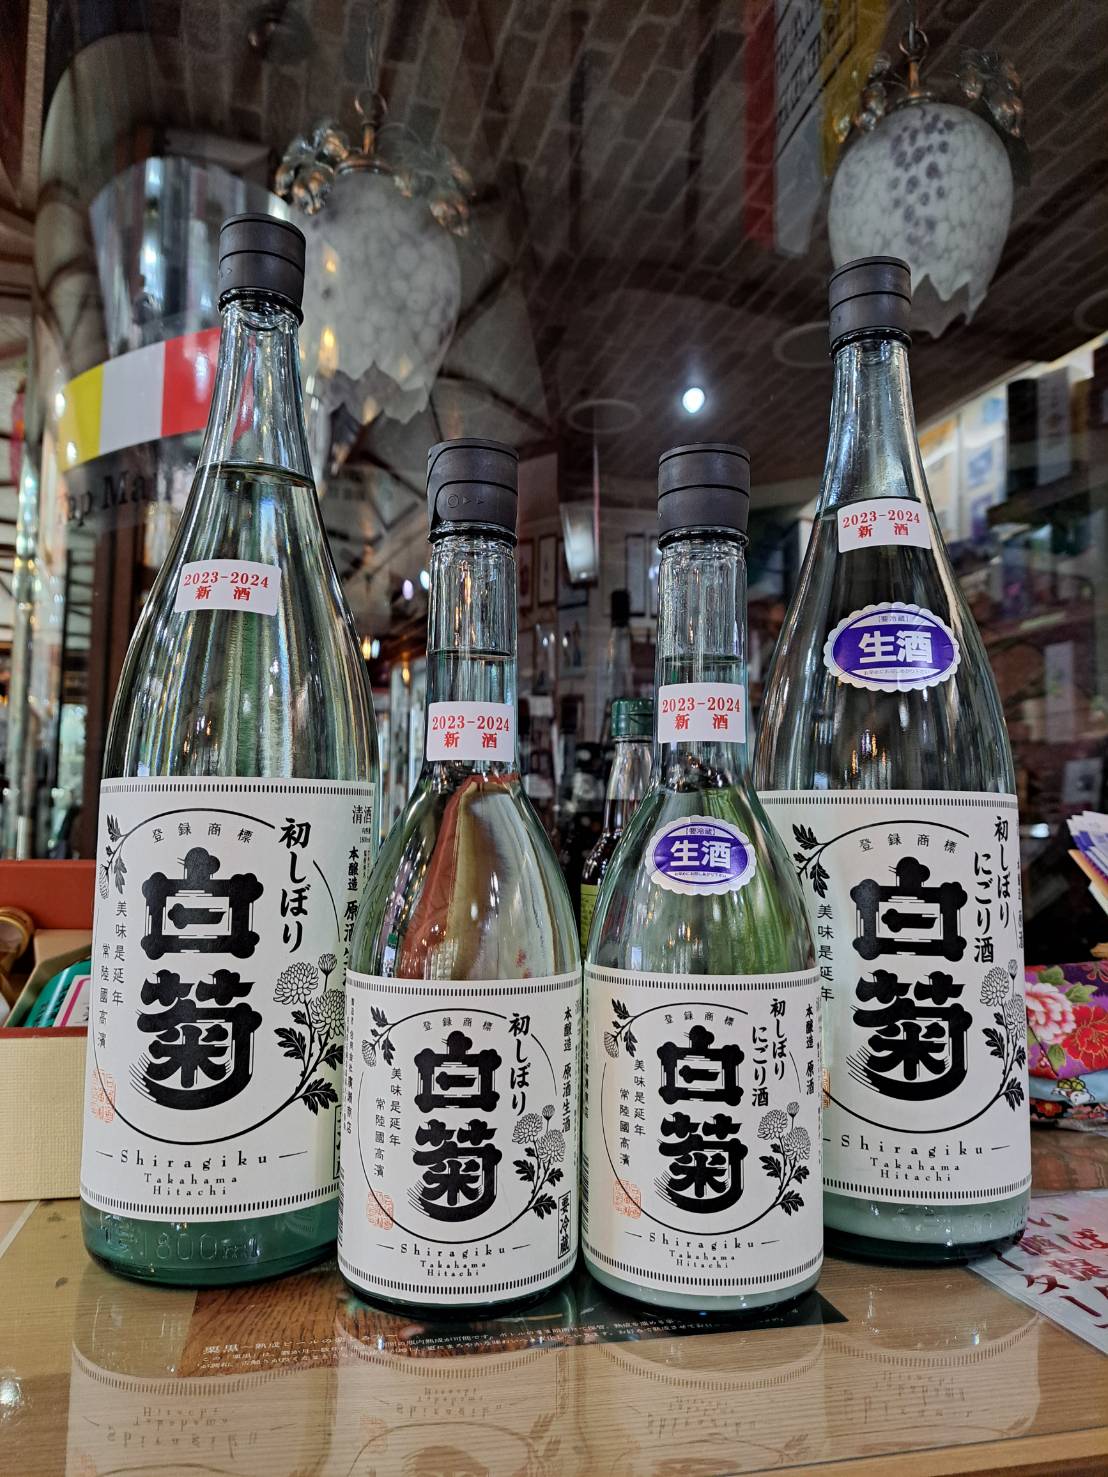 『茨城県内で注目の蔵元、白菊さんから二種類の搾りたて新酒が入荷しました』